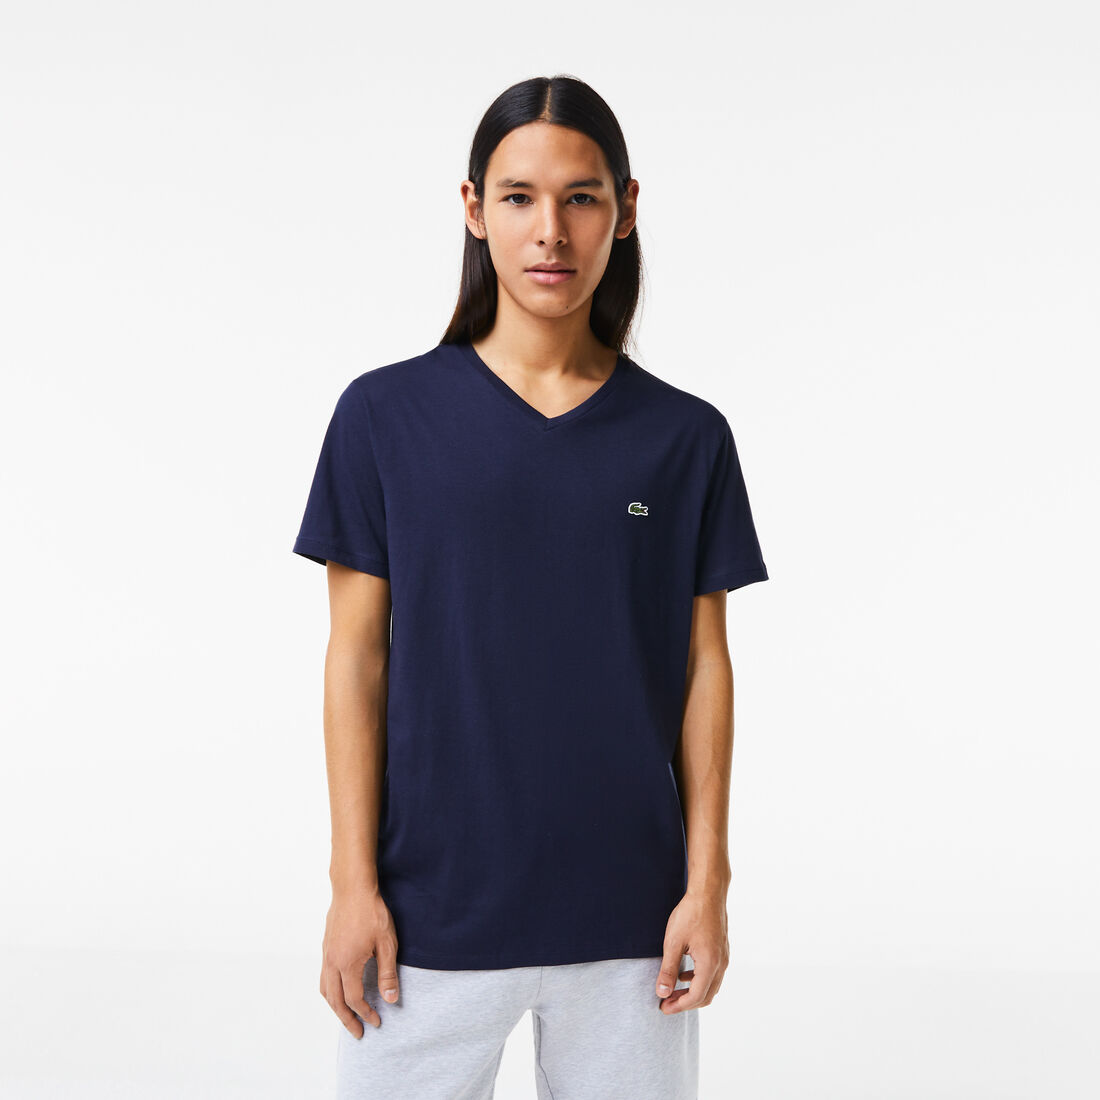 Lacoste - Pima Cotton Jersey T-Shirt, V-Neck - Navy